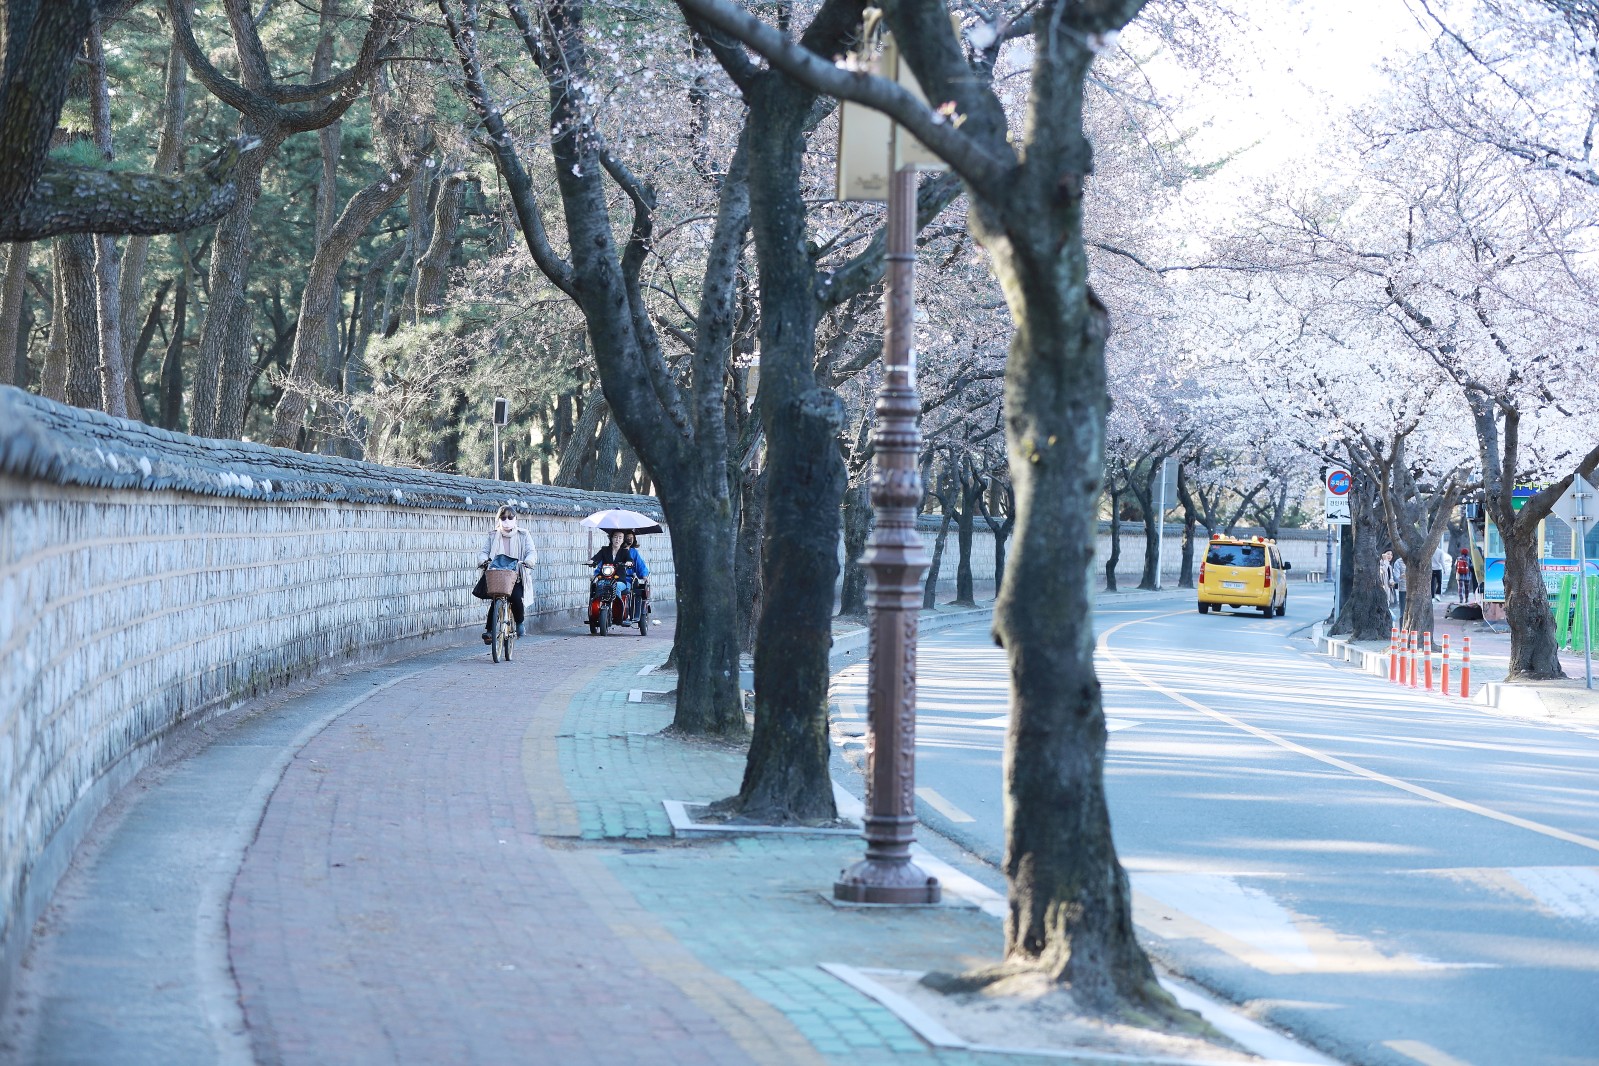 대릉원(2019년 봄)